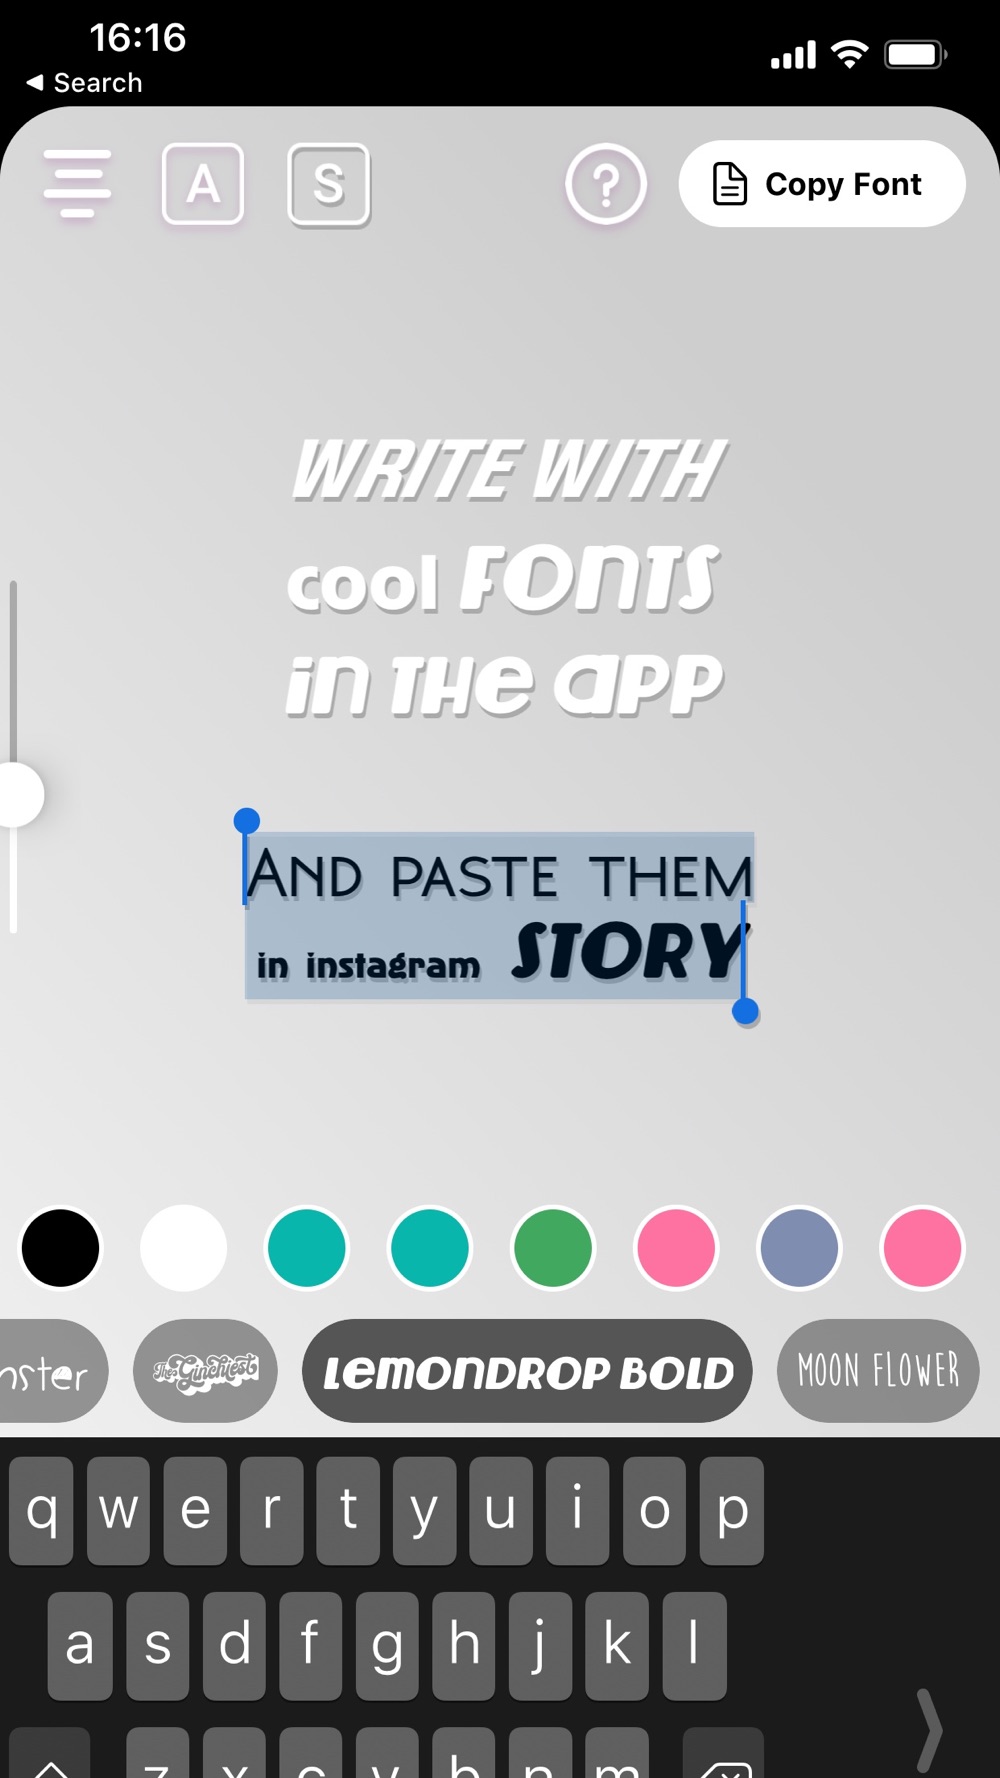 Font Insta Story độc đáo và sáng tạo! Tạo không gian thu hút trên trang cá nhân của bạn với những font chữ độc quyền chỉ có trên Insta Story. Hãy thử ngay hôm nay và khám phá tối đa tiềm năng của bạn trên mạng xã hội!